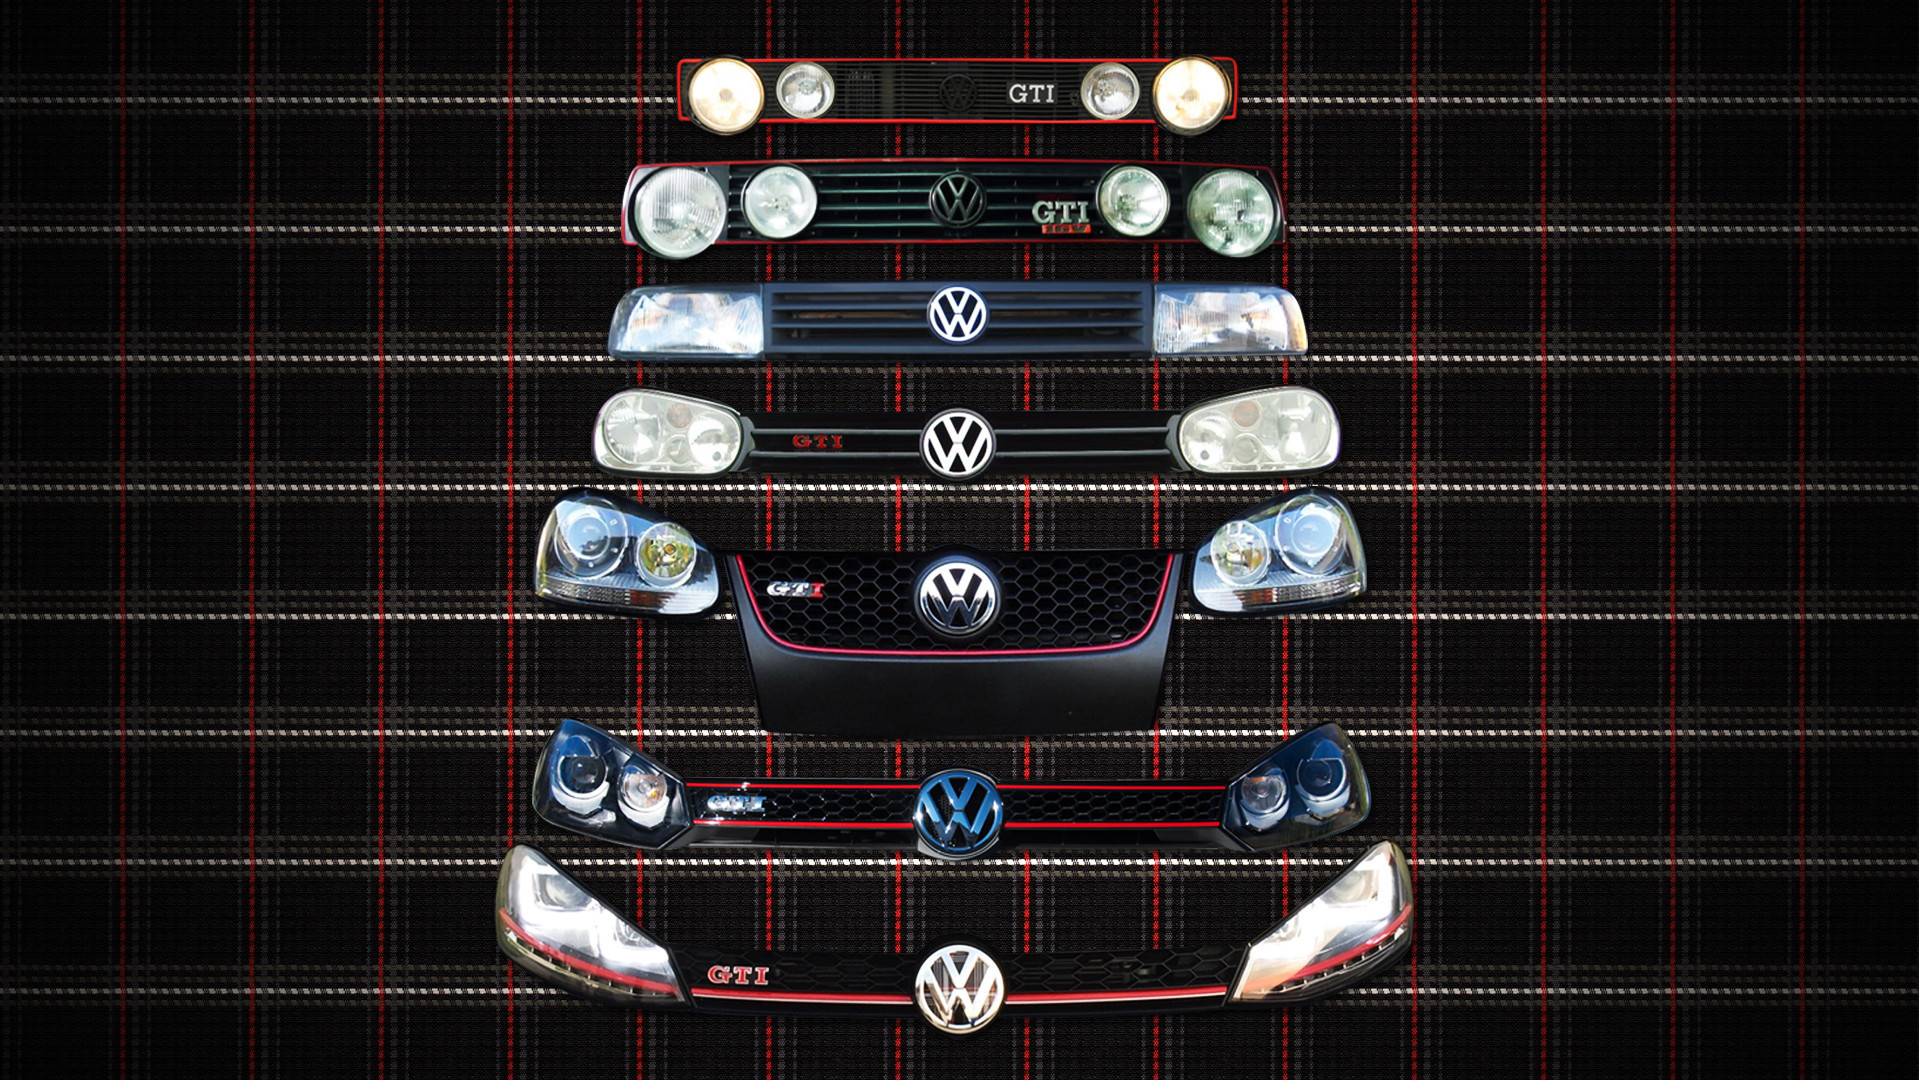 1920x1080 1920x1200 Volkswagen GTI Wallpaper 42979